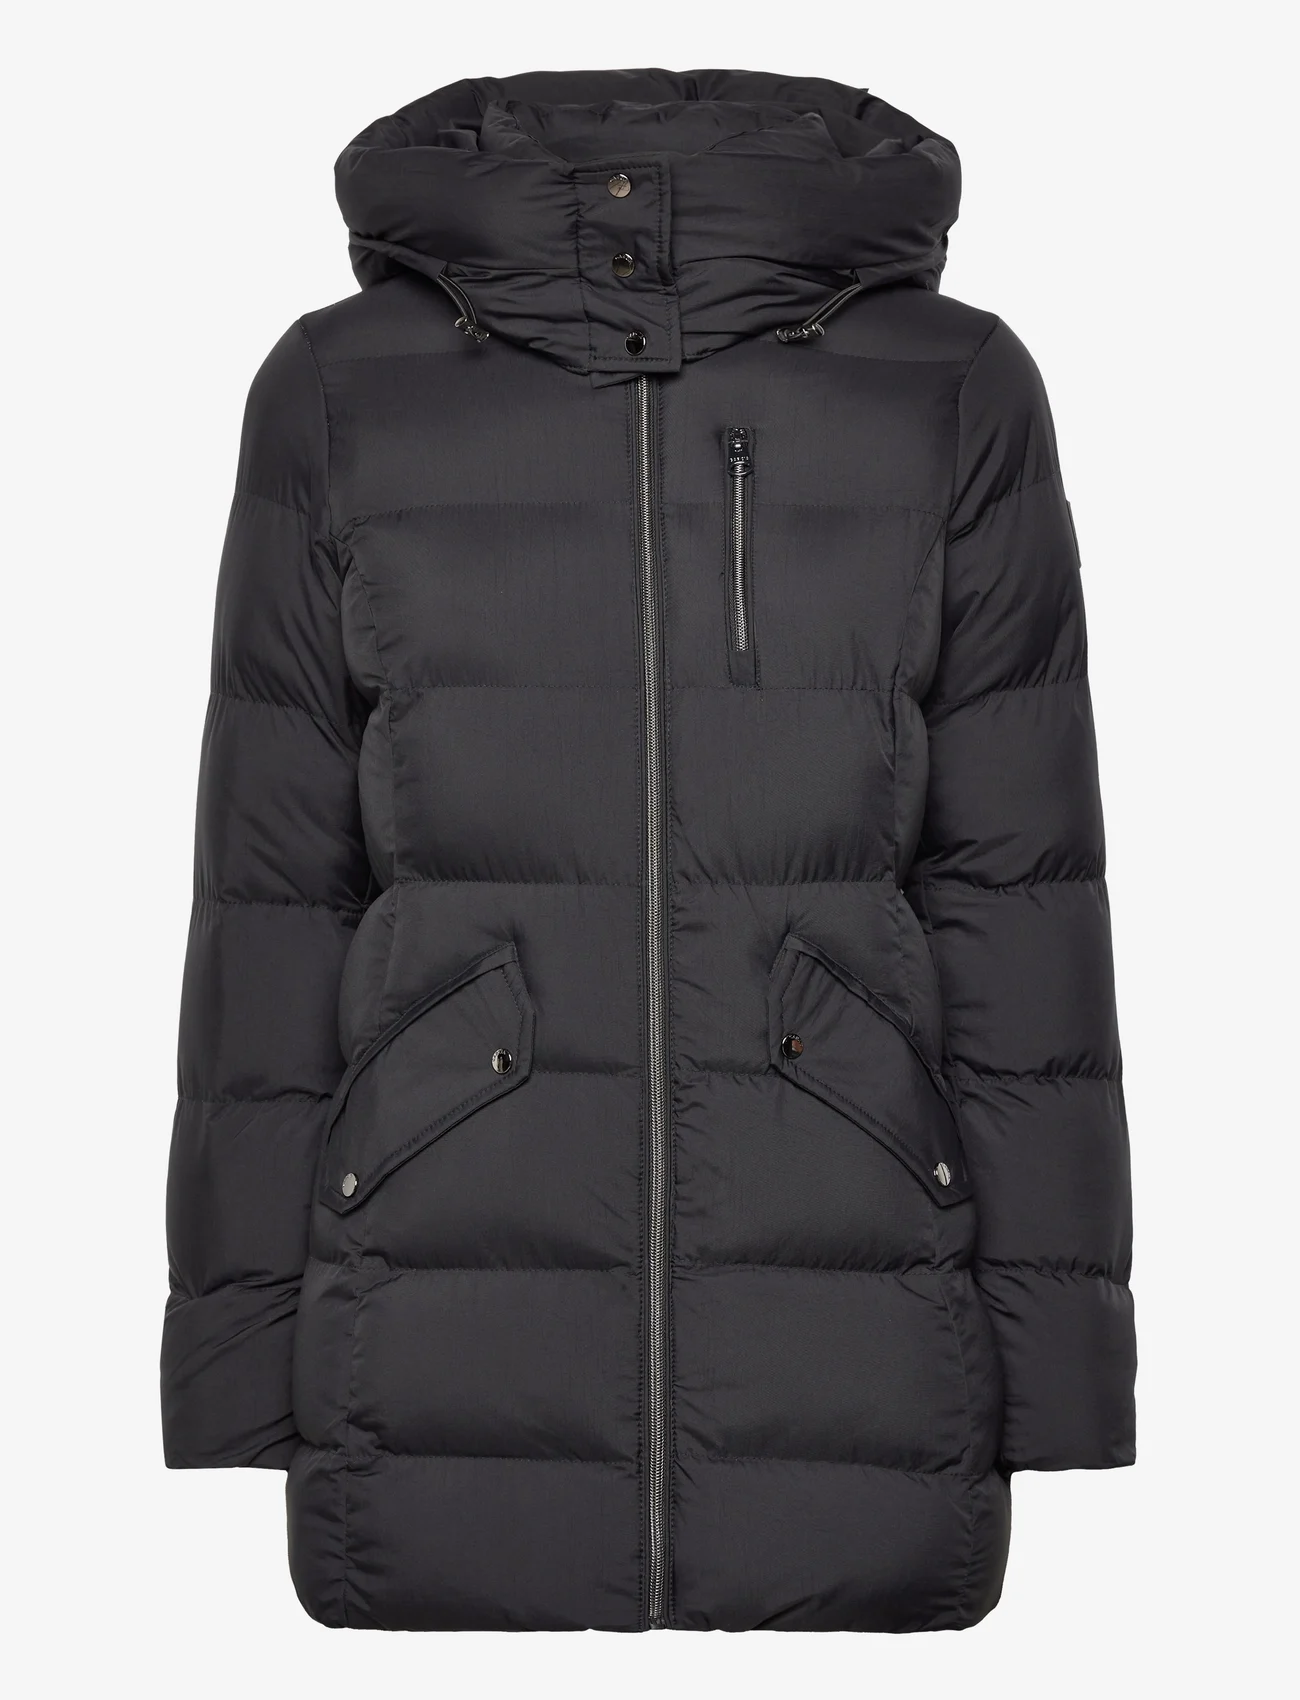 Garcia - ladies outdoor jacket - vinterjackor - black - 0